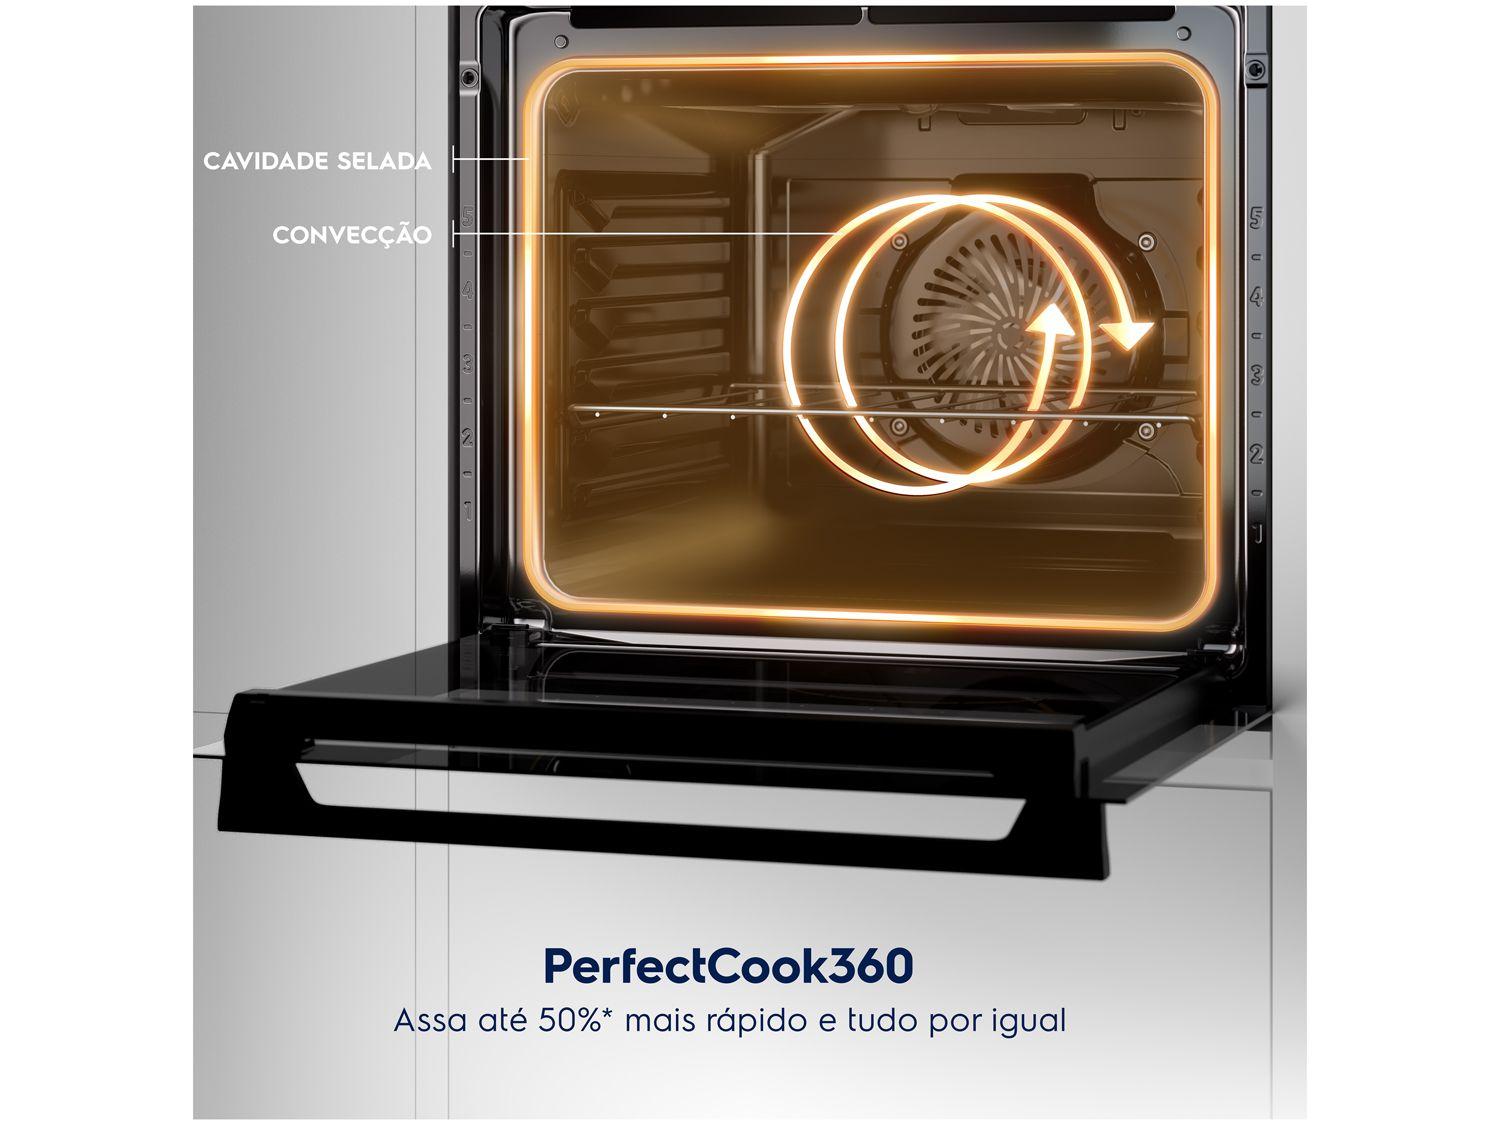 Foto 6 - Forno a Gás de Embutir Electrolux de Convecção - com Timer 80L Preto PerfectCook360 OE8GH